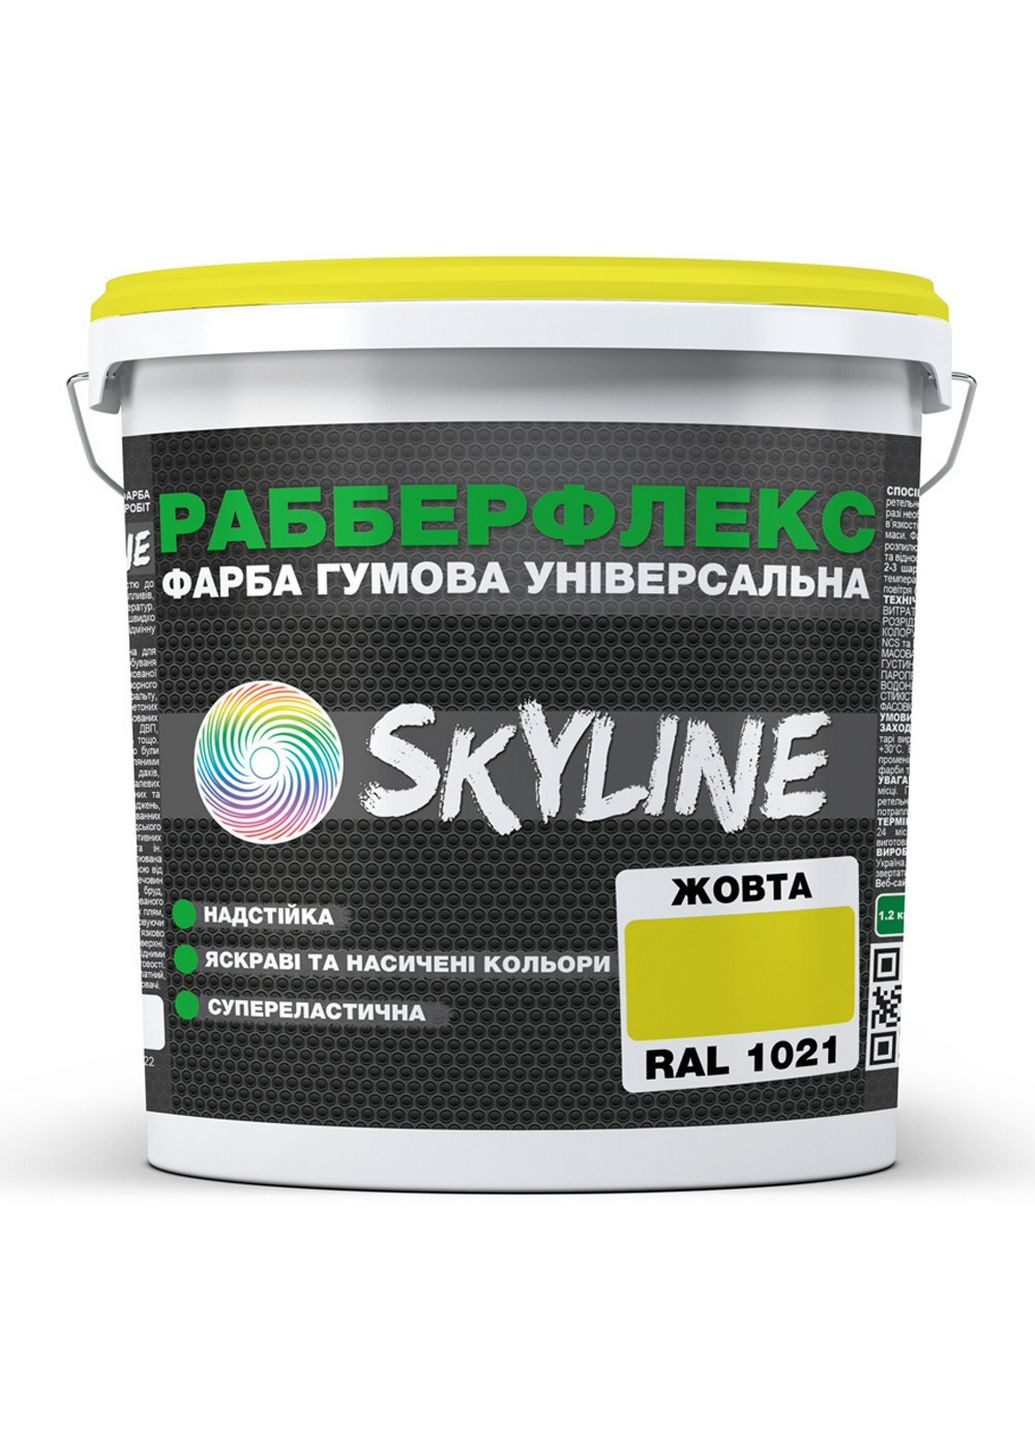 Надстійка фарба гумова супереластична «РабберФлекс» 12 кг SkyLine (283325963)